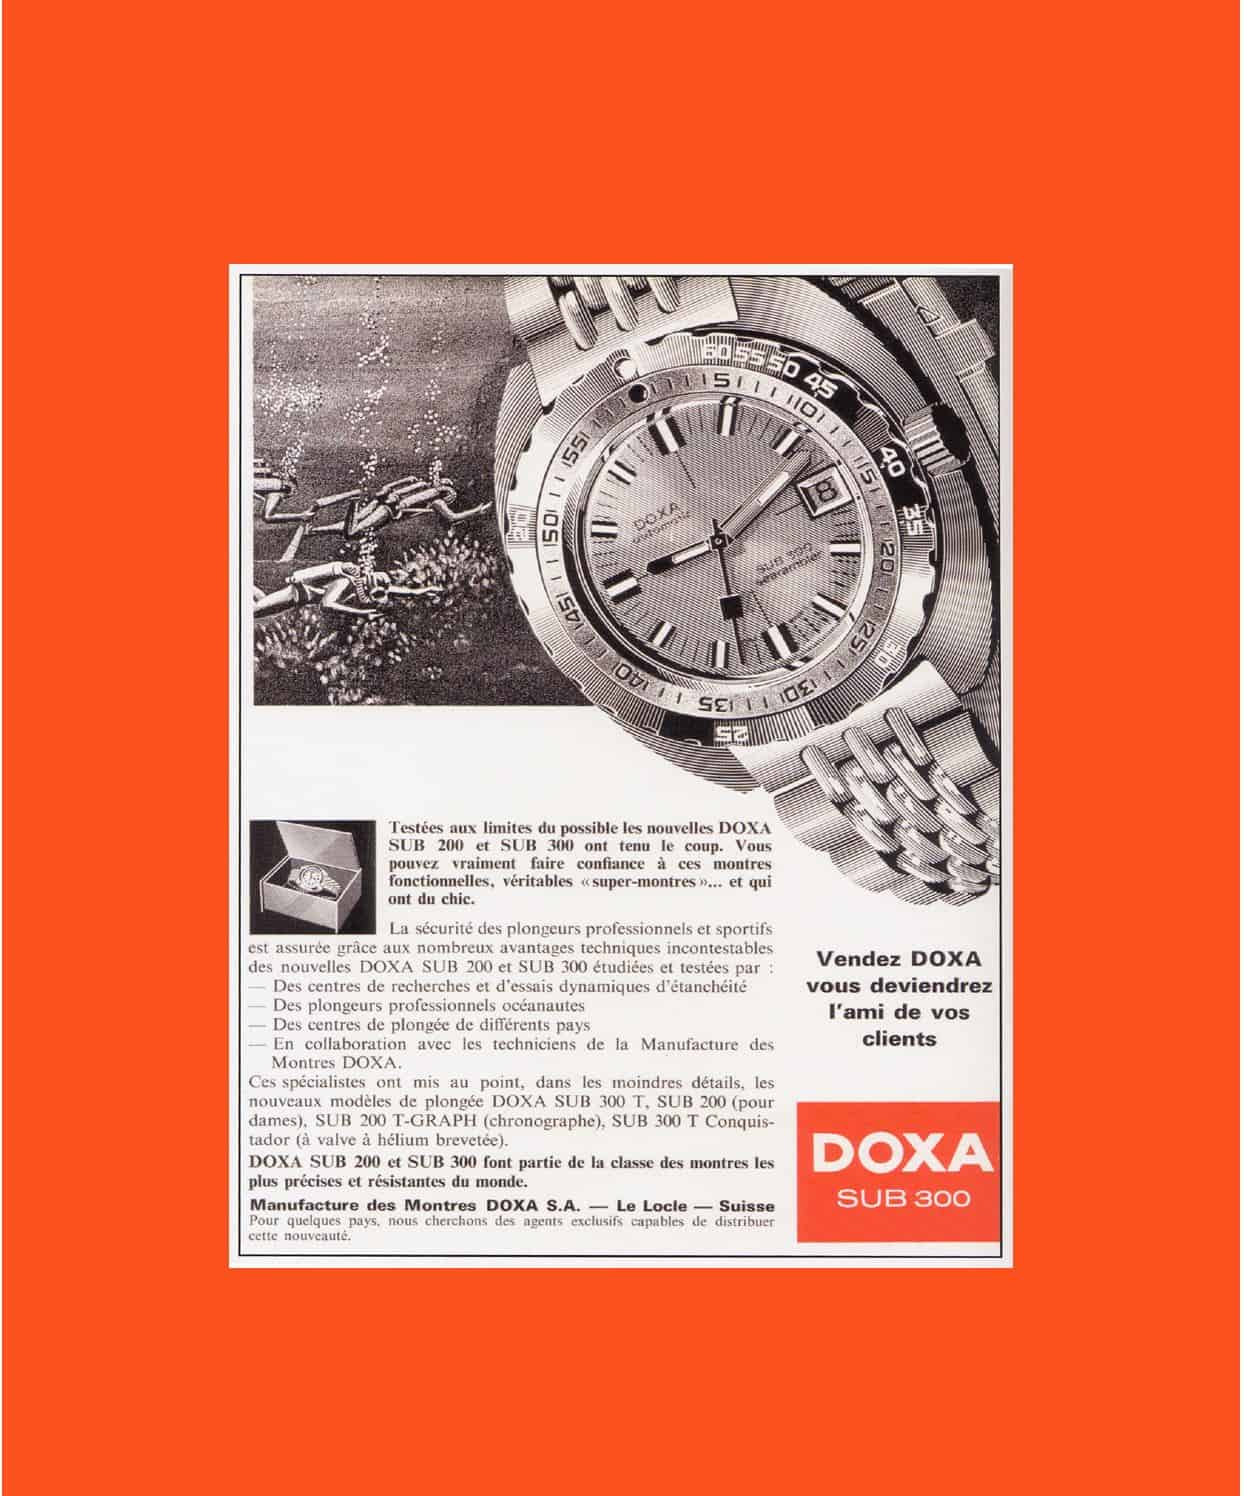 Alte Anzeigenmotive und eine kleine Geschichte der Marke: Die Doxa 300 Sub Taucheruhr Doxa Taucheruhr: Diese Uhr zog Taucher an